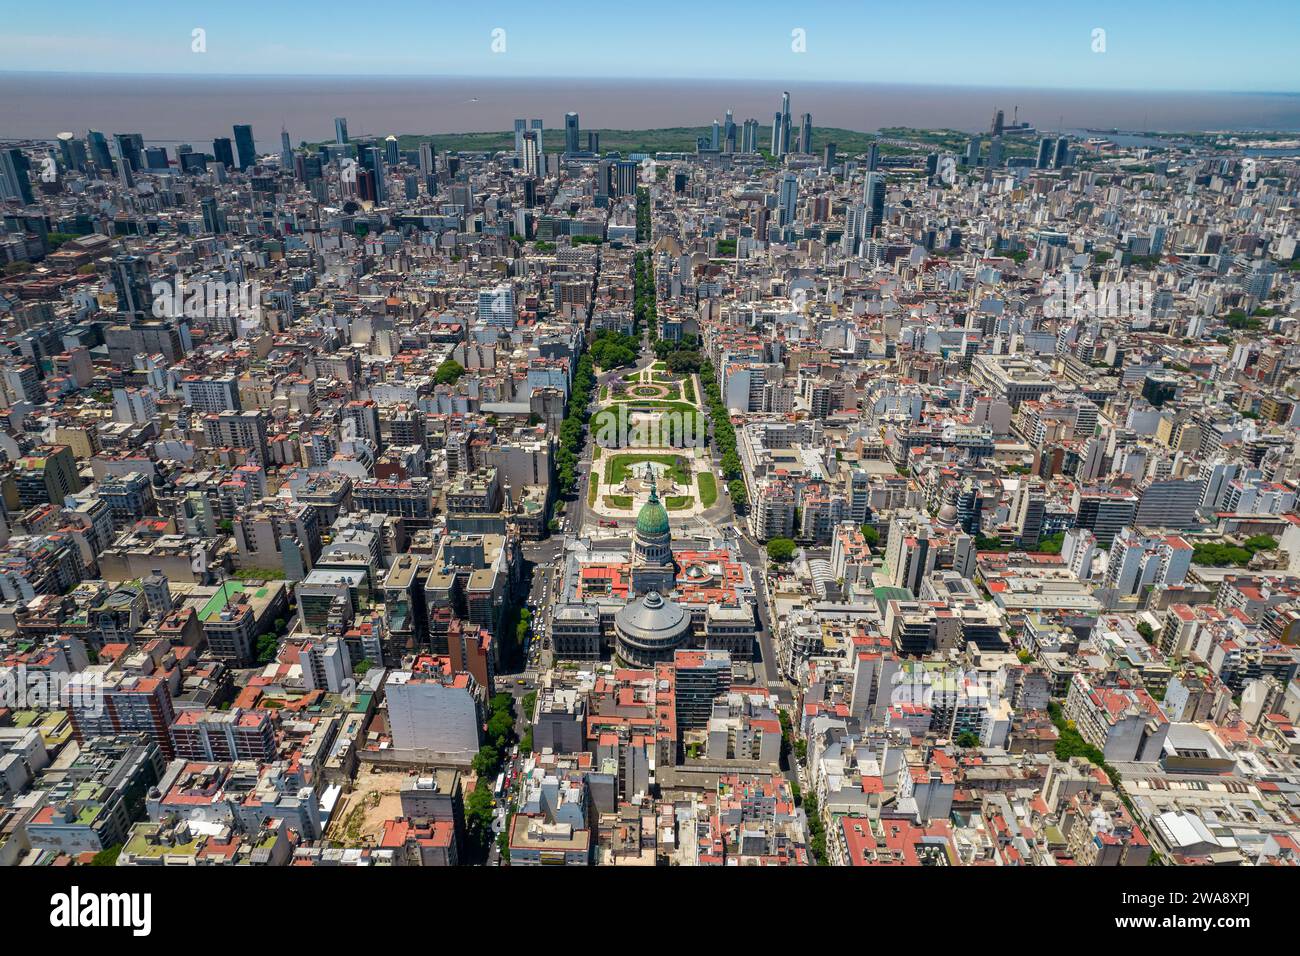 Wunderschöner Blick aus der Luft auf die argentinische Flagge, den Palast des argentinischen Nationalkongresses, in der Stadt Buenos Aires, Argentinien Stockfoto